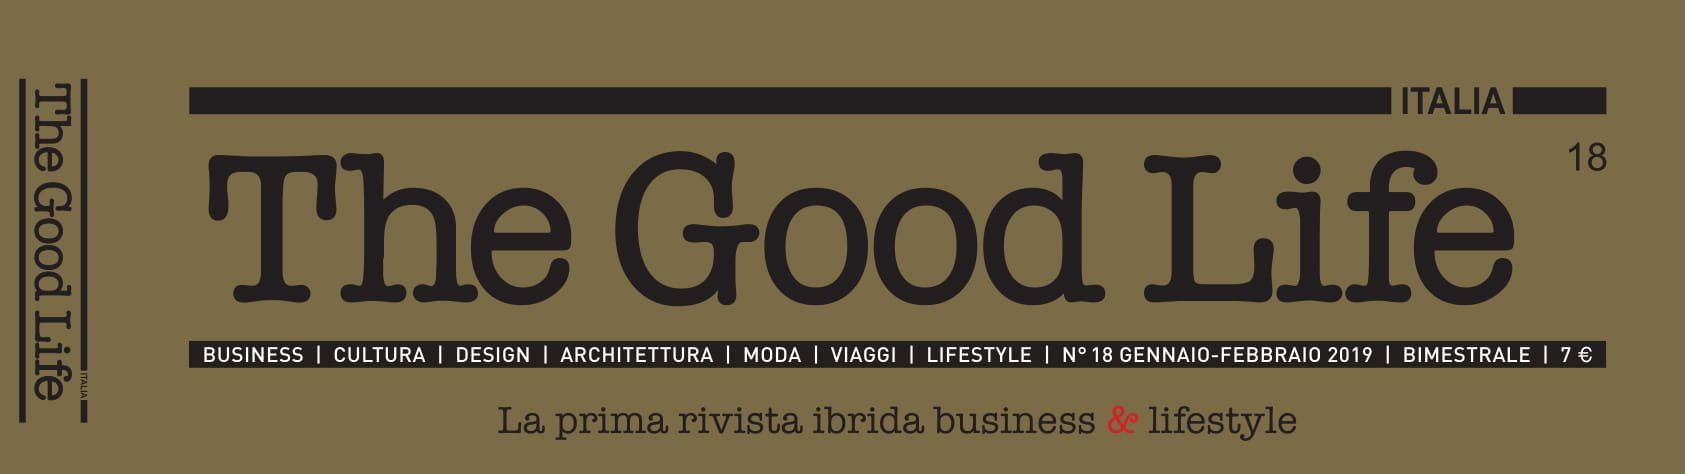 Articolo-Good-Business-Cover-1-e1556802728560